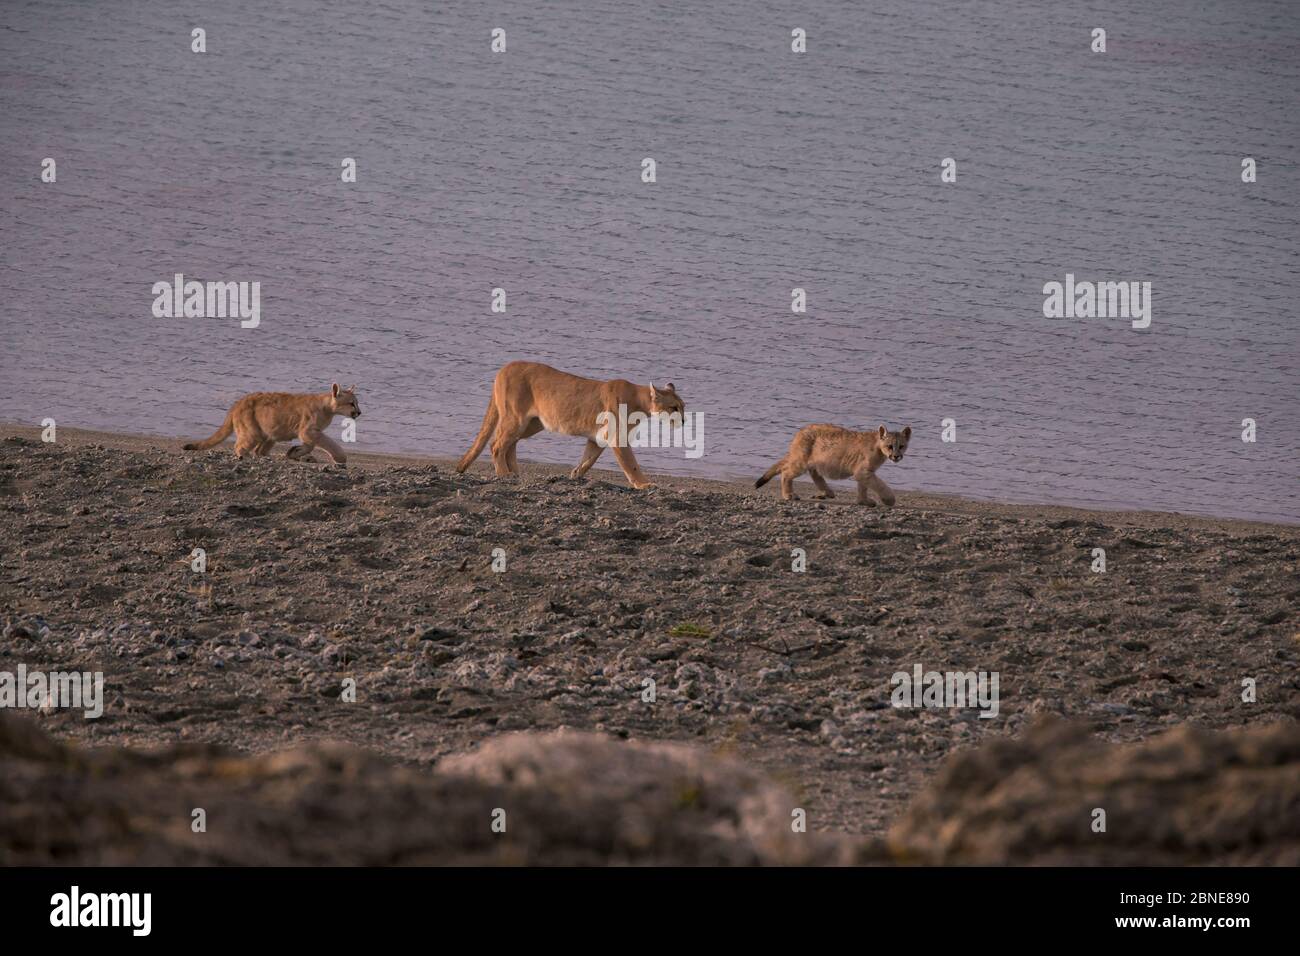 Puma (Puma concolor) femelle avec deux petits de six mois, Chili. Banque D'Images